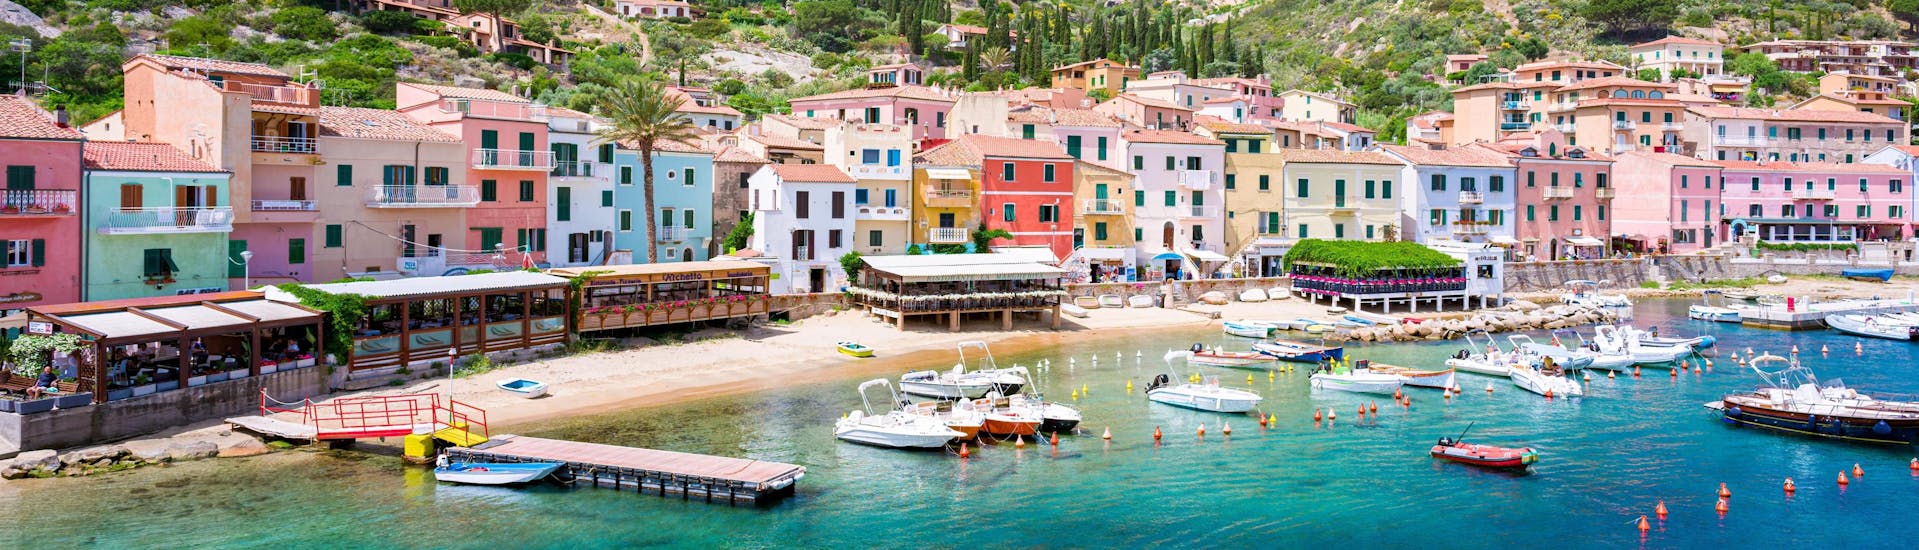 Uitzicht op de haven van Giglio, een prachtige plek die u kunt bezoeken tijdens een boottocht naar de Toscaanse Archipel.